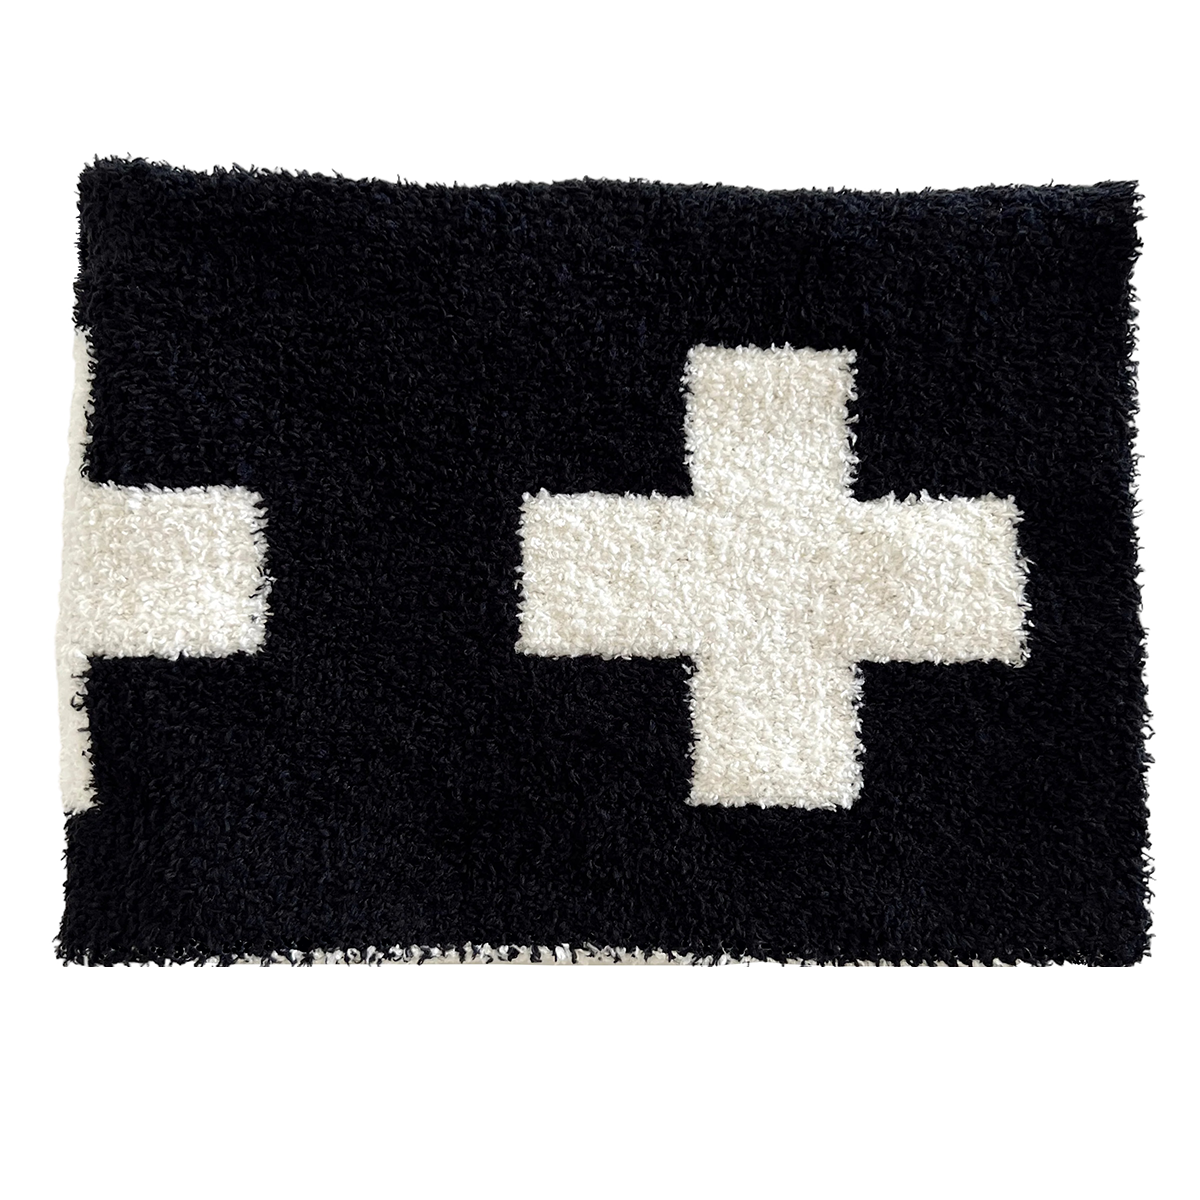 Phufy™ Bliss Mini Blanket, Black/White Cross